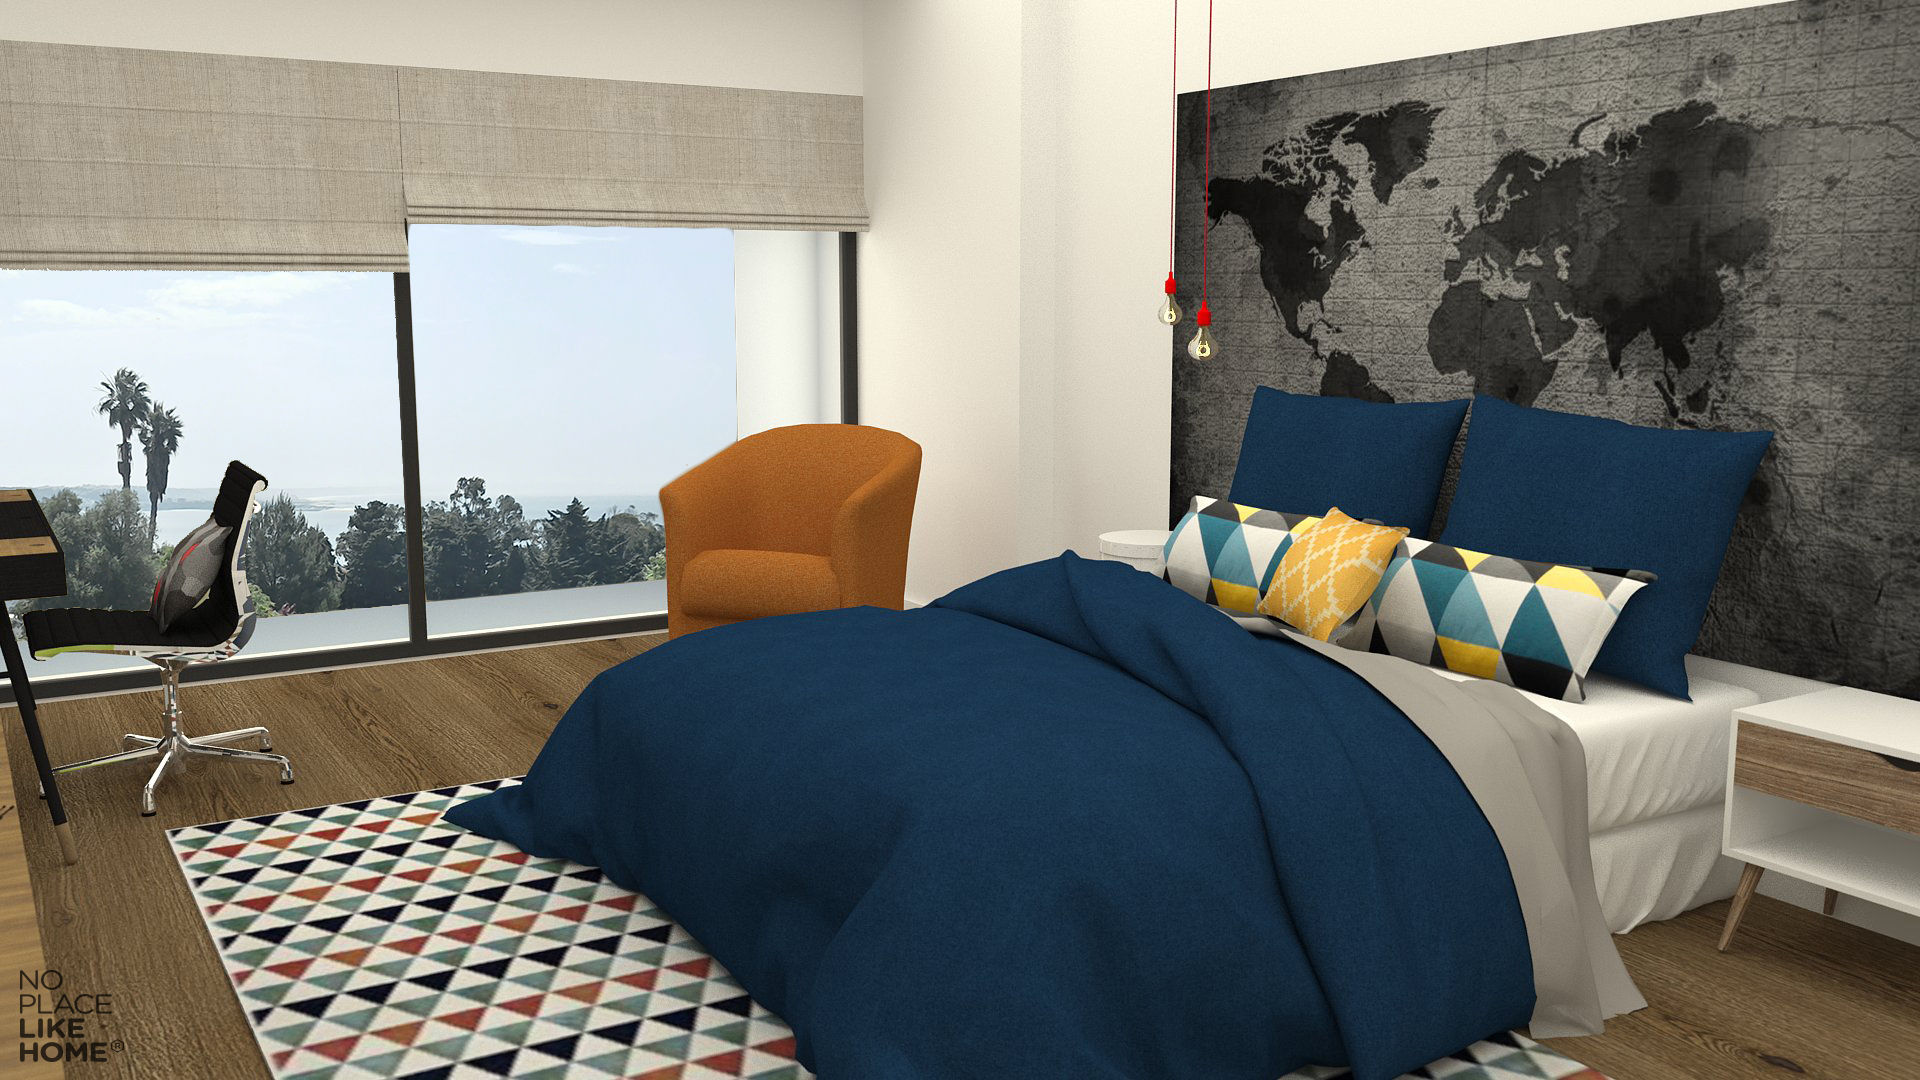 Boy Bedroom No Place Like Home ® Quartos modernos bedroom,sober,giant screen,textiles